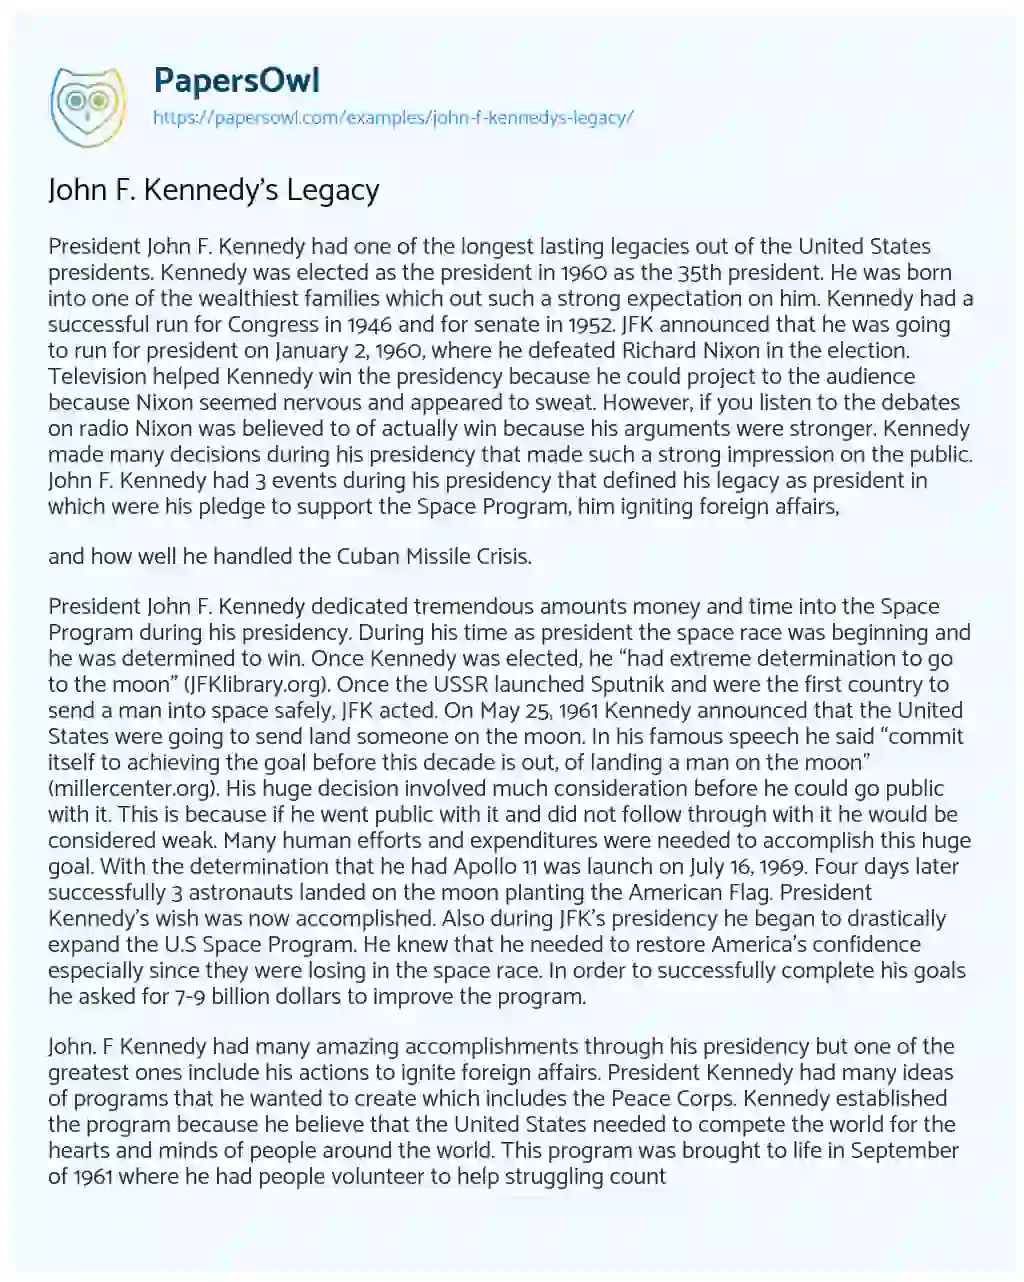 Essay on John F. Kennedy’s Legacy